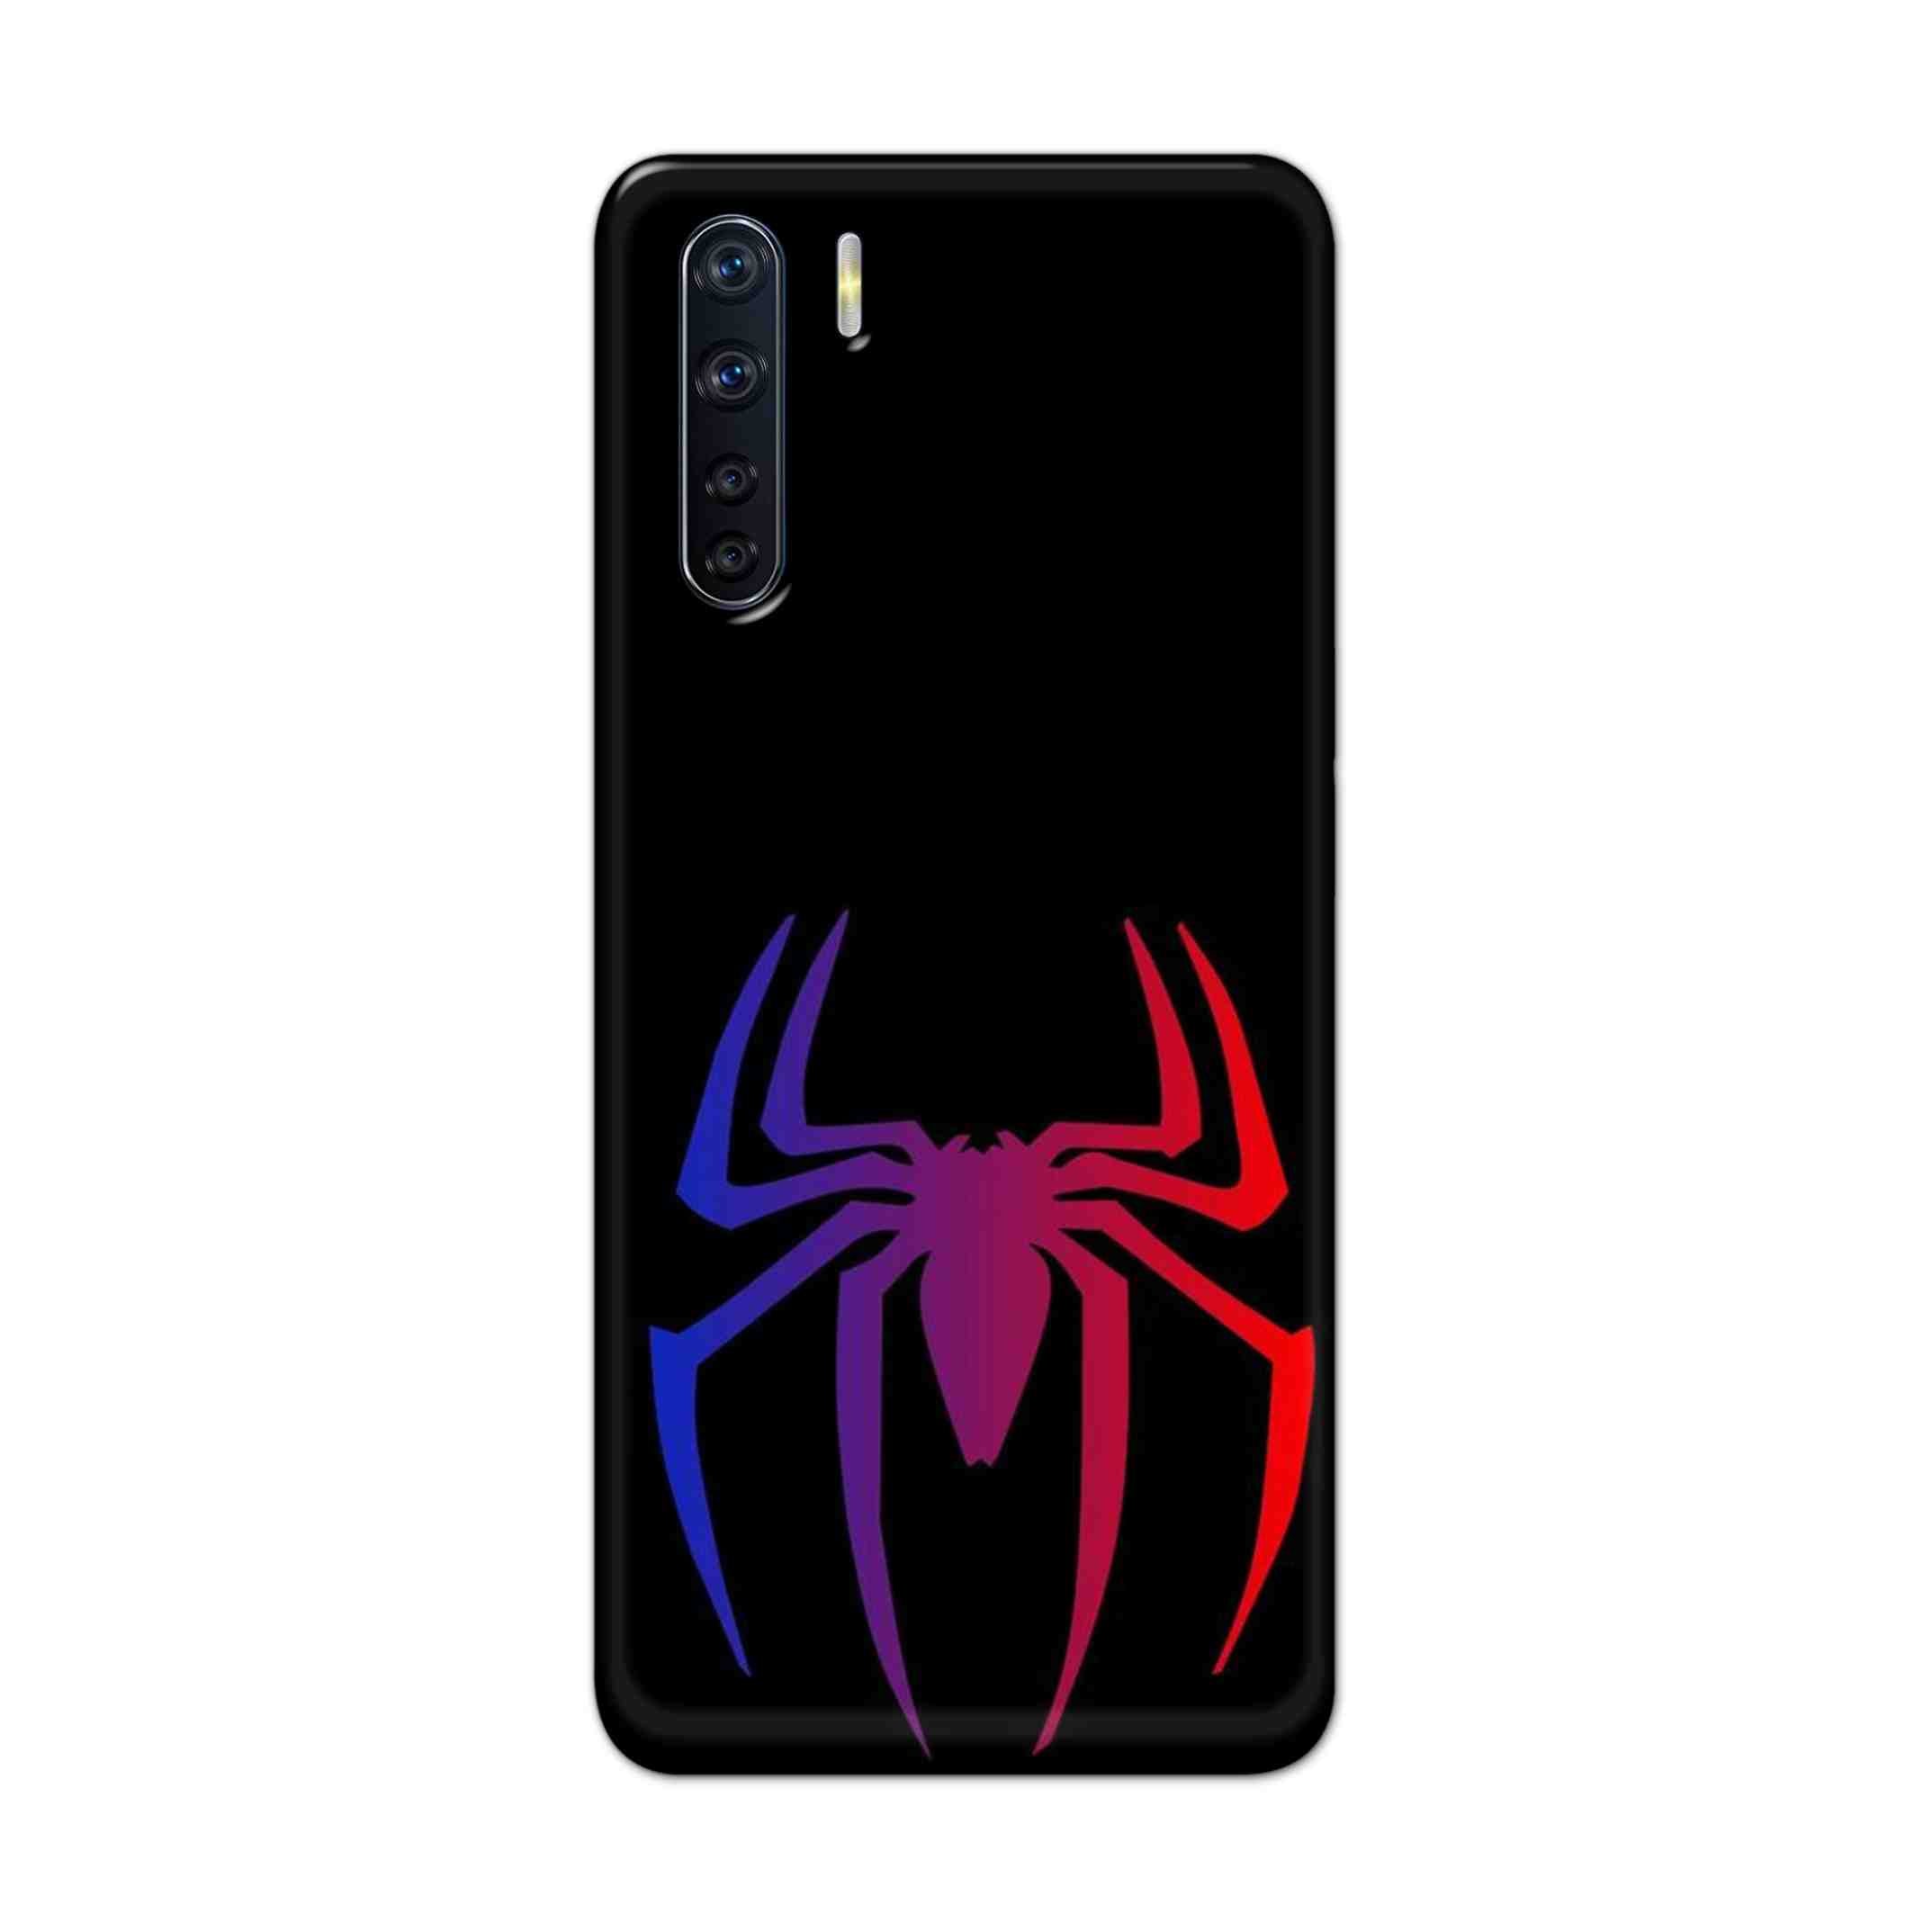 Buy Neon Spiderman Logo Hard Back Mobile Phone Case Cover For OPPO F15 Online